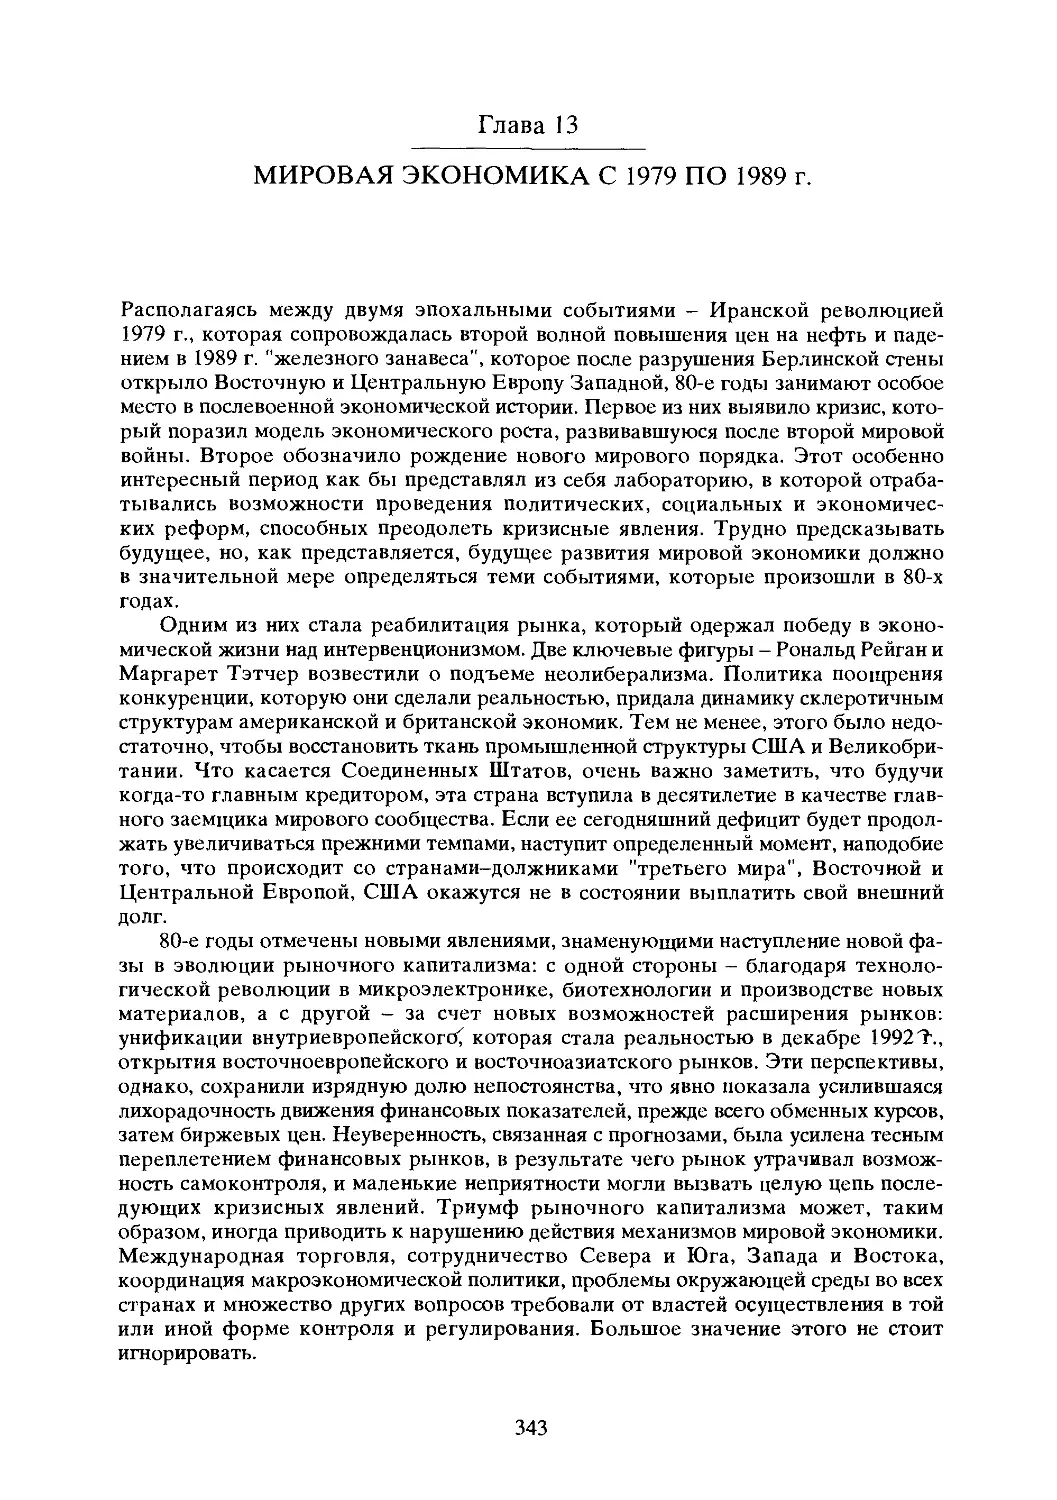 Глава 13. МИРОВАЯ ЭКОНОМИКА С 1979 по 1989 г.